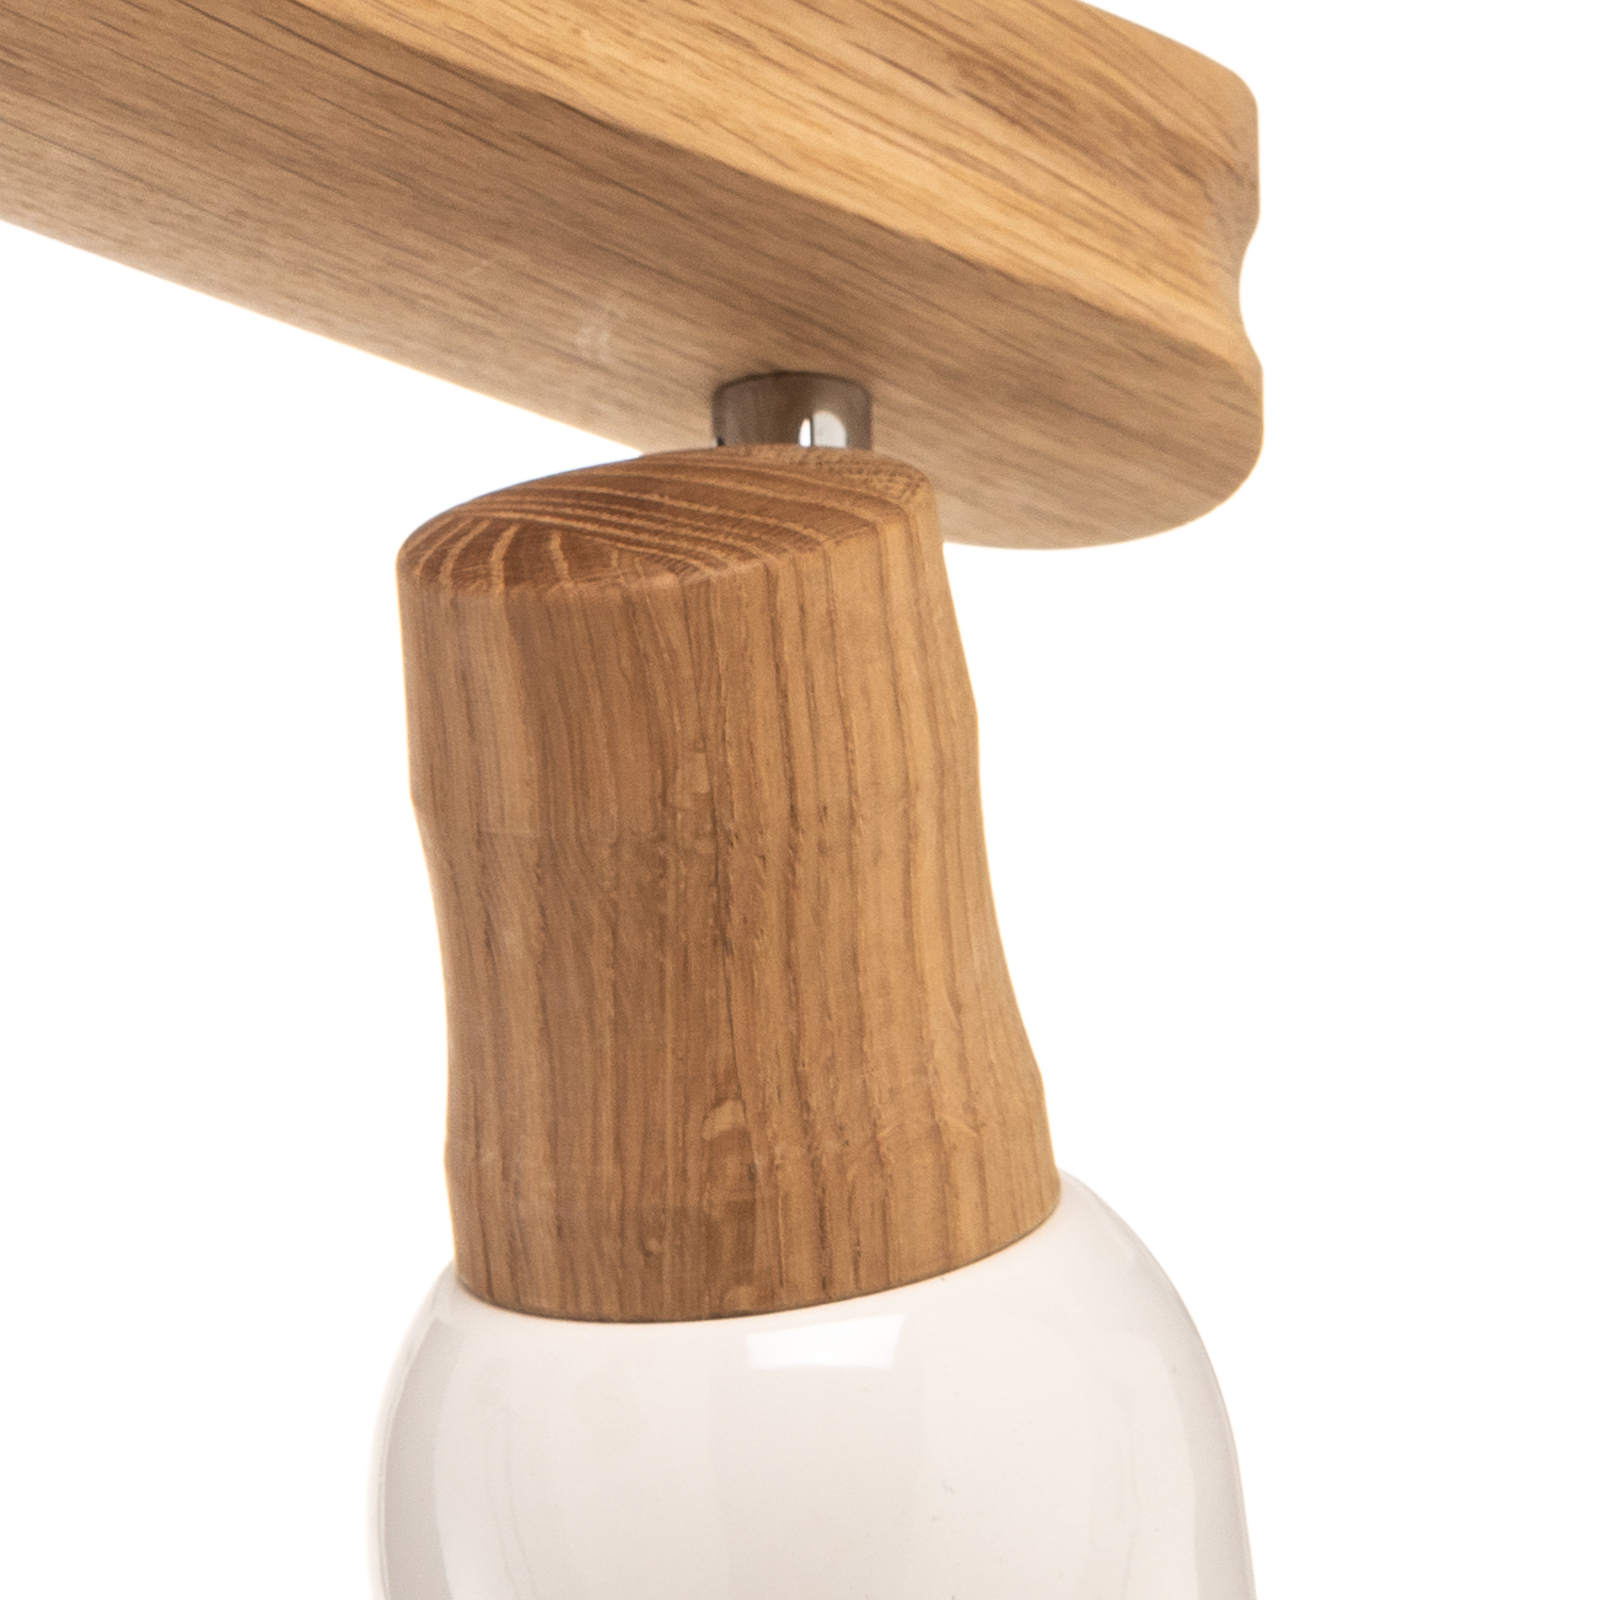 Wooden Svantje ceiling light, two-bulb